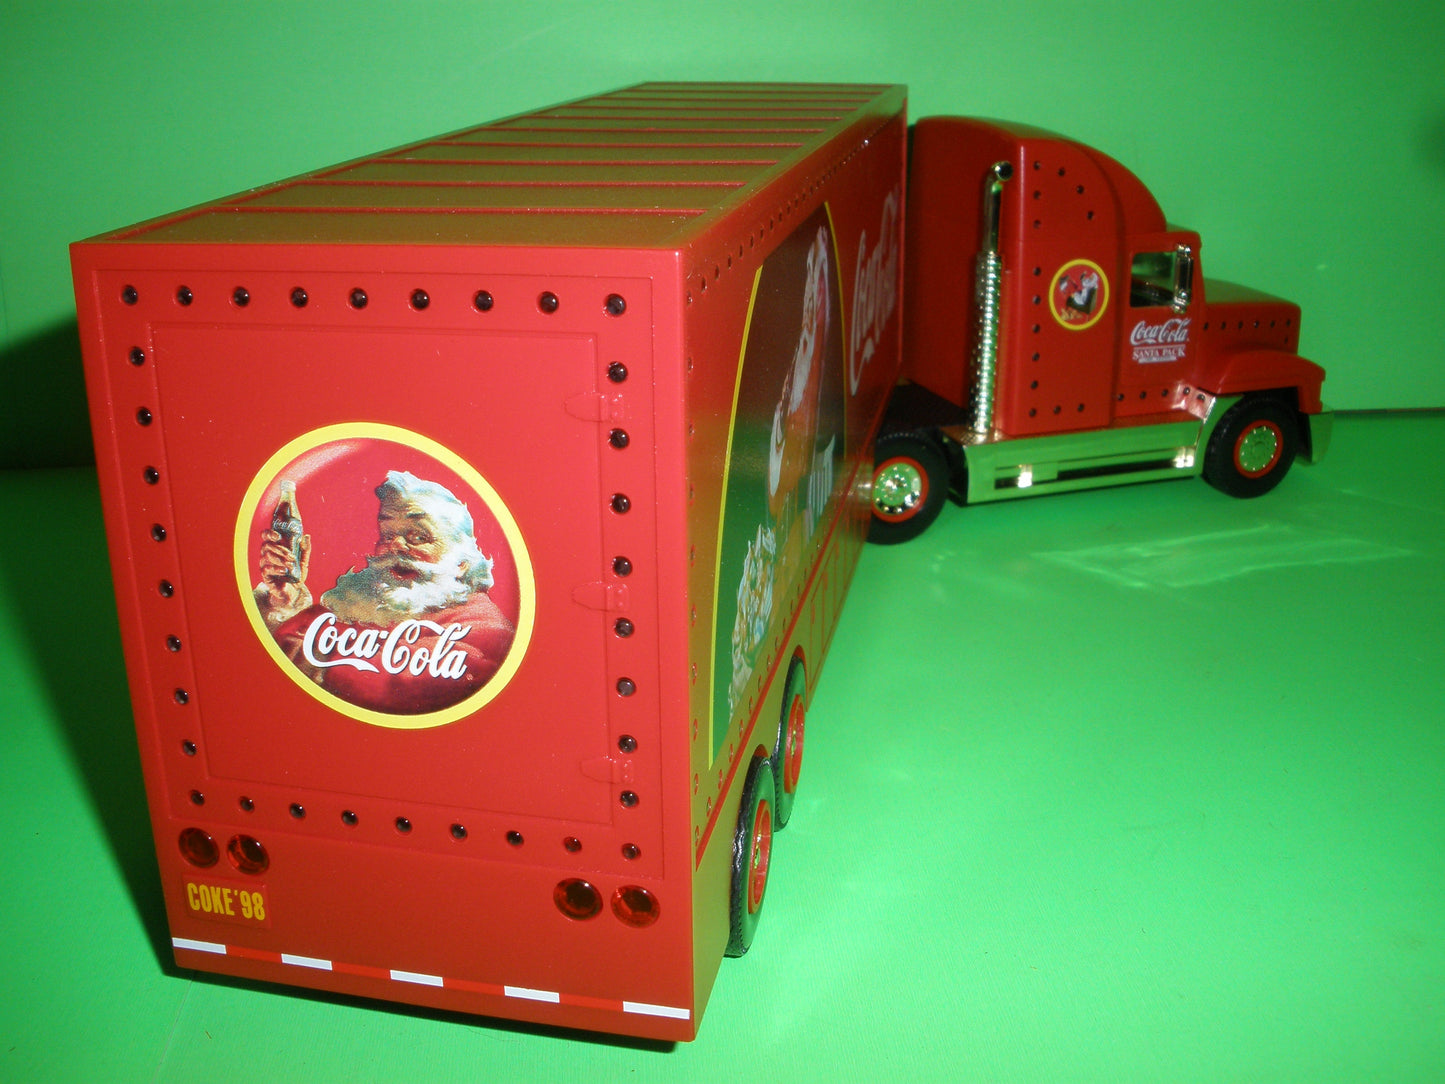 Coca-Cola 1998 Holiday Caravan Truck - Gold Version